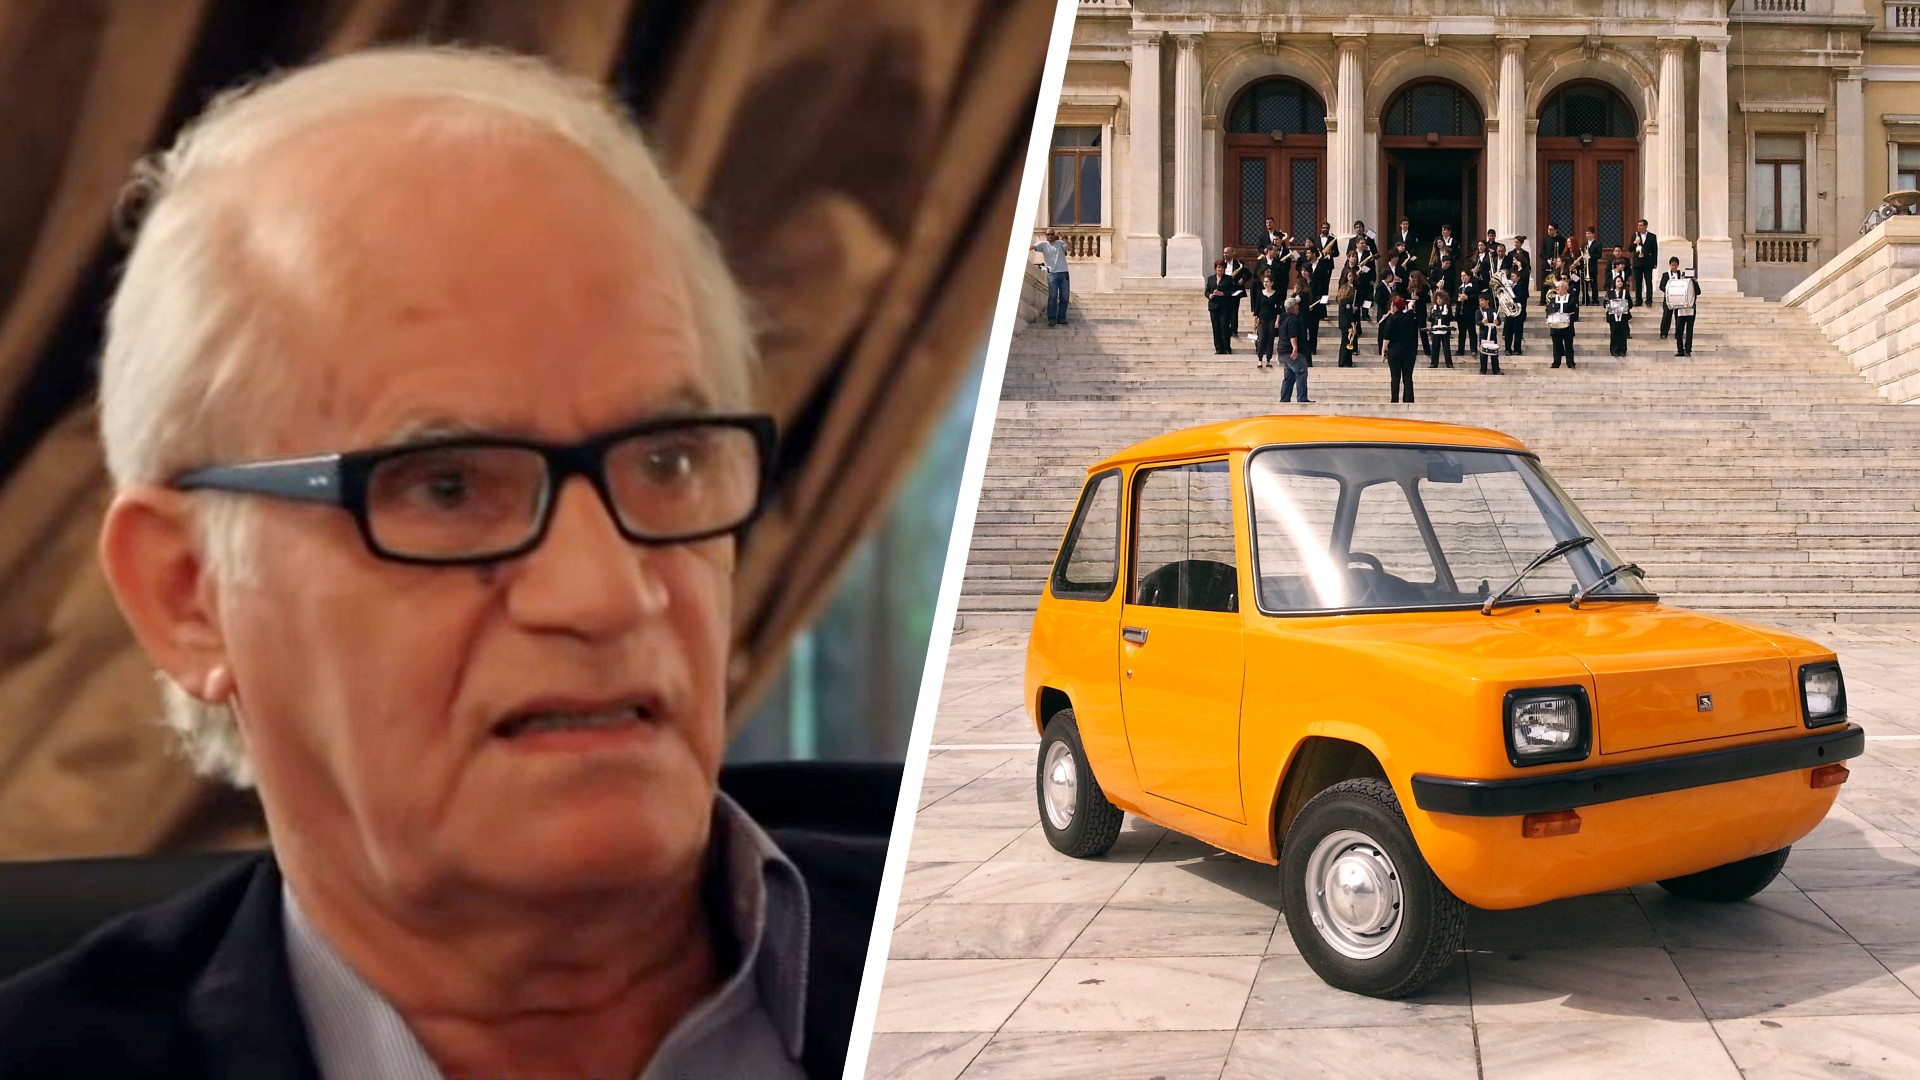 Έφυγε από την ζωή ο Έλληνας εφευρέτης του πρώτου ηλεκτρικού αυτοκινήτου Κωνσταντίνος Αδρακτάς